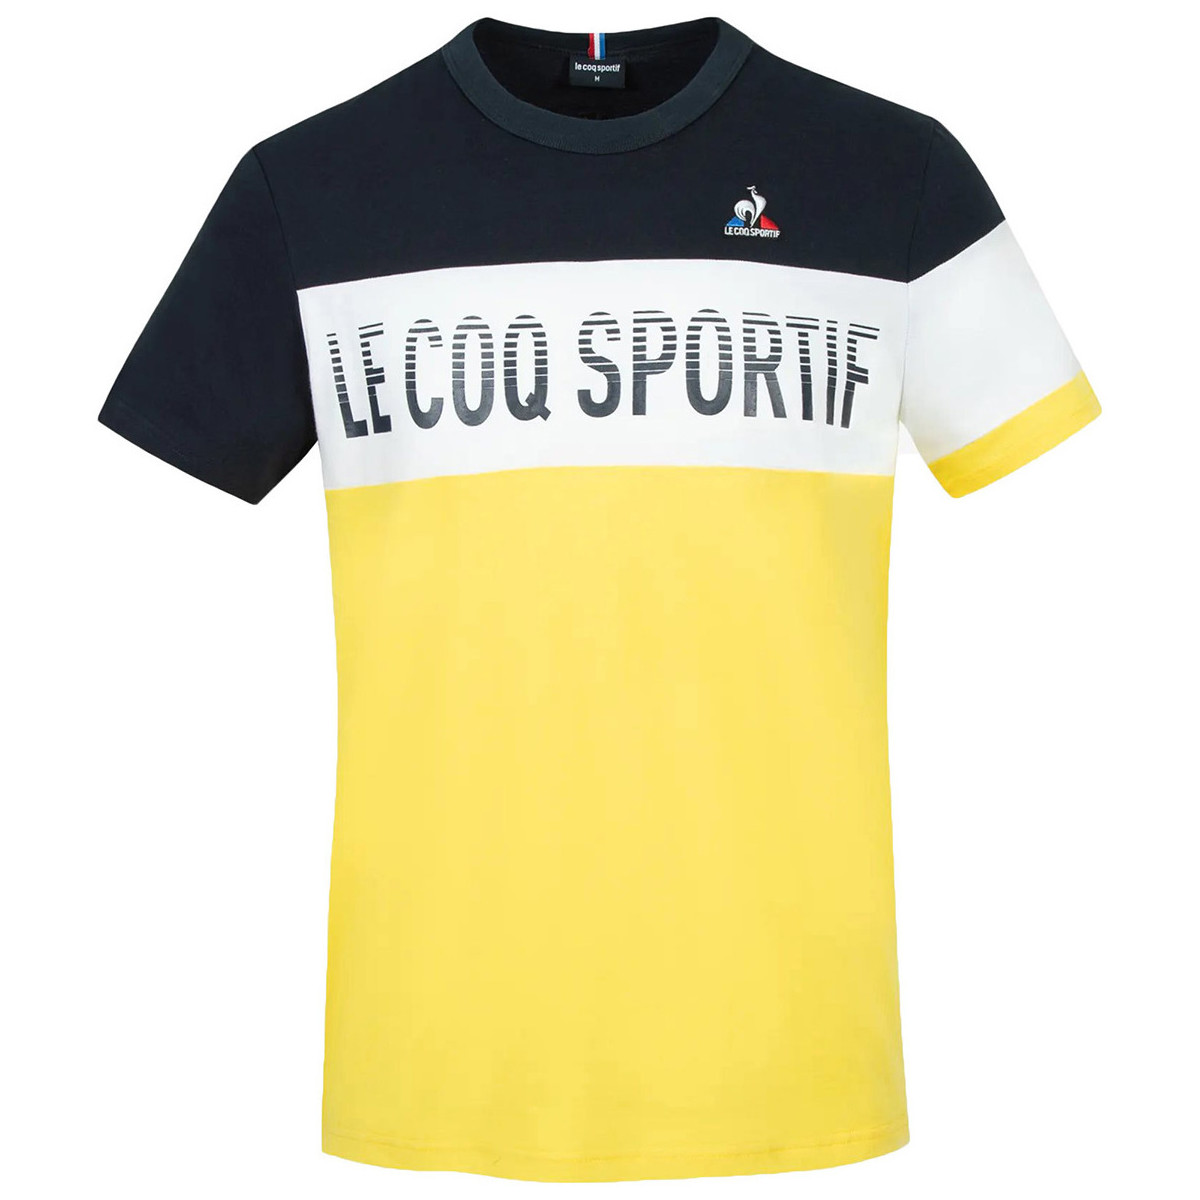 tekstylia Męskie T-shirty z krótkim rękawem Le Coq Sportif Saison 2 Tee Niebieski